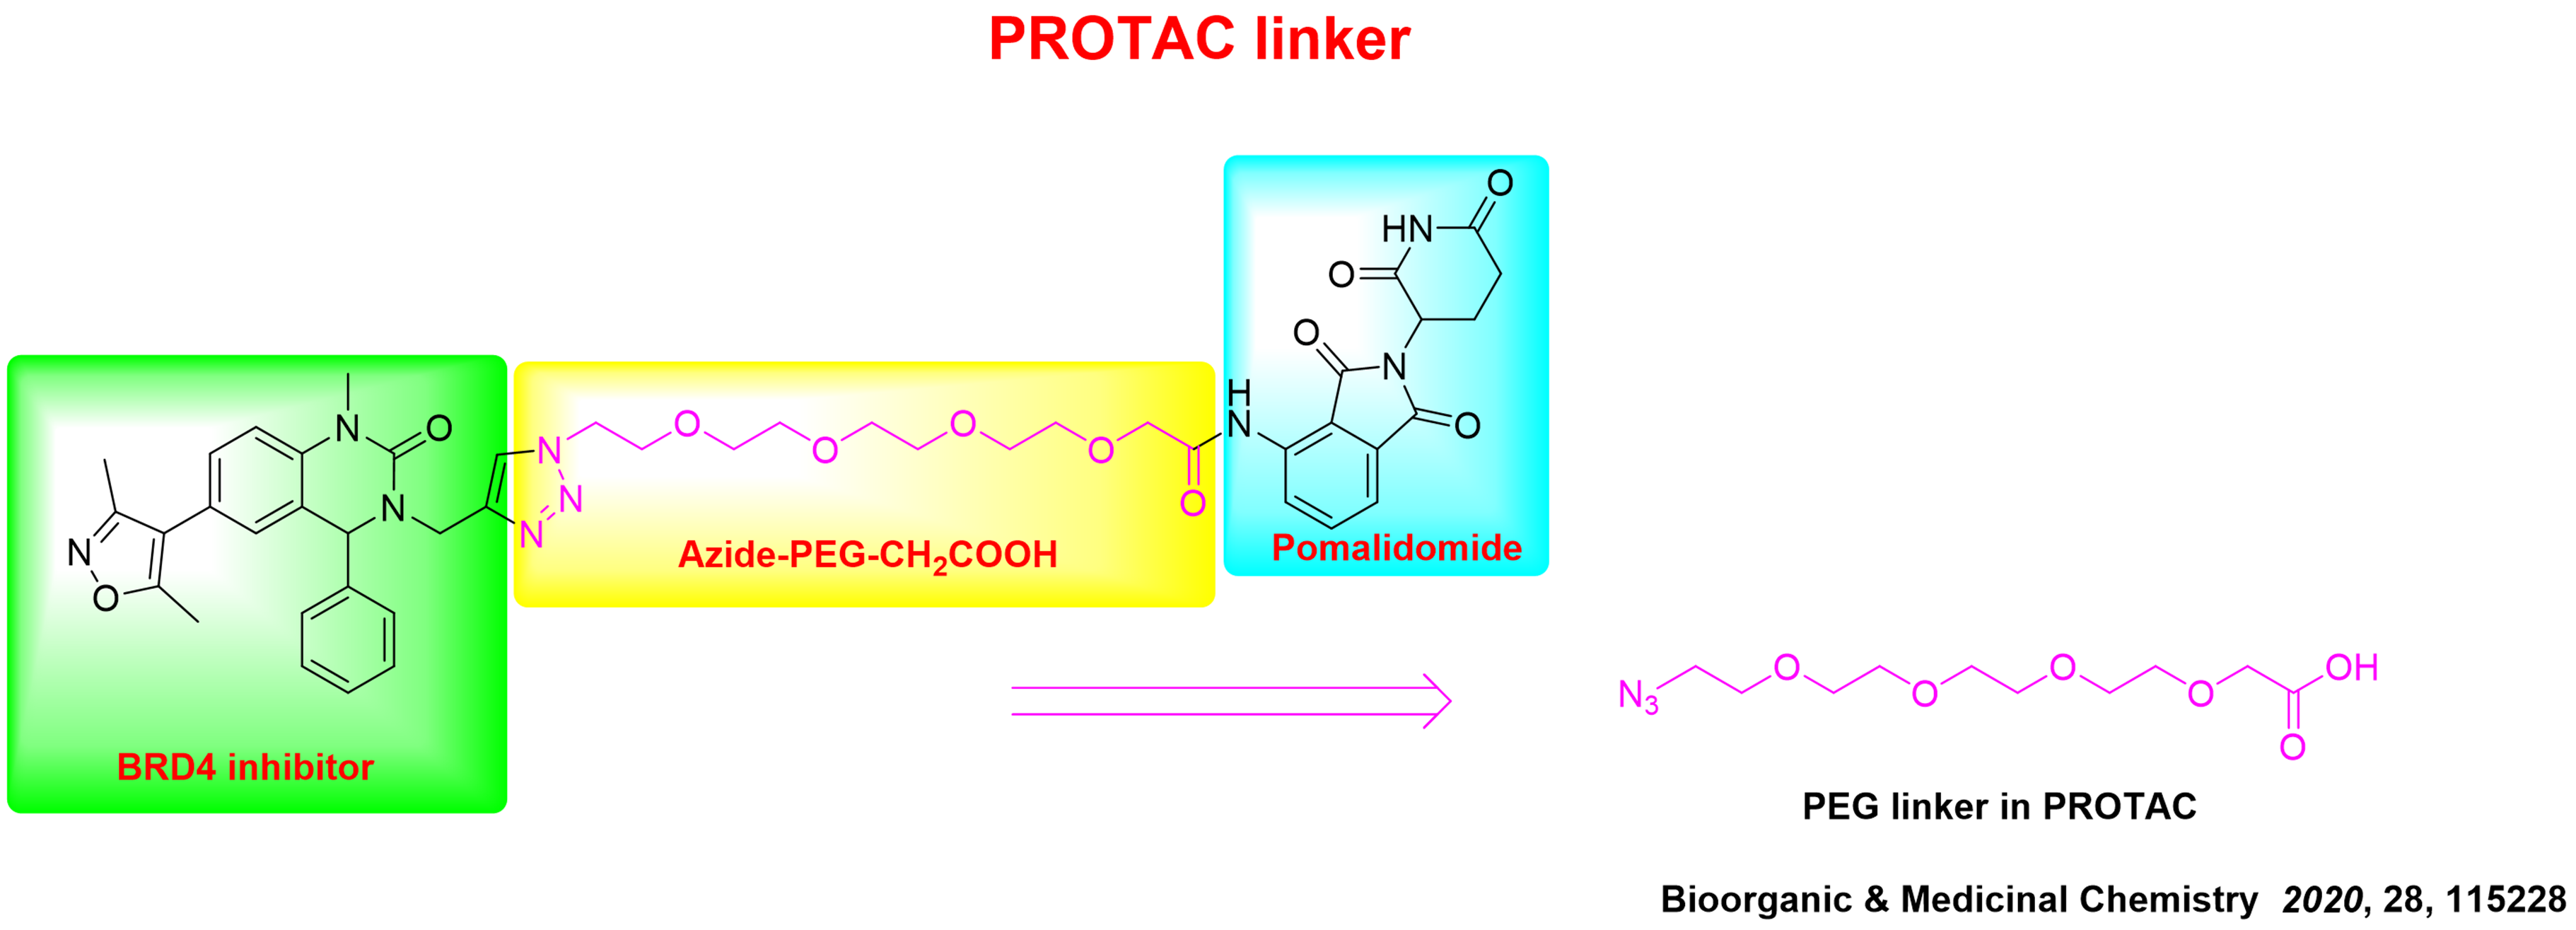 PROTAC Linker